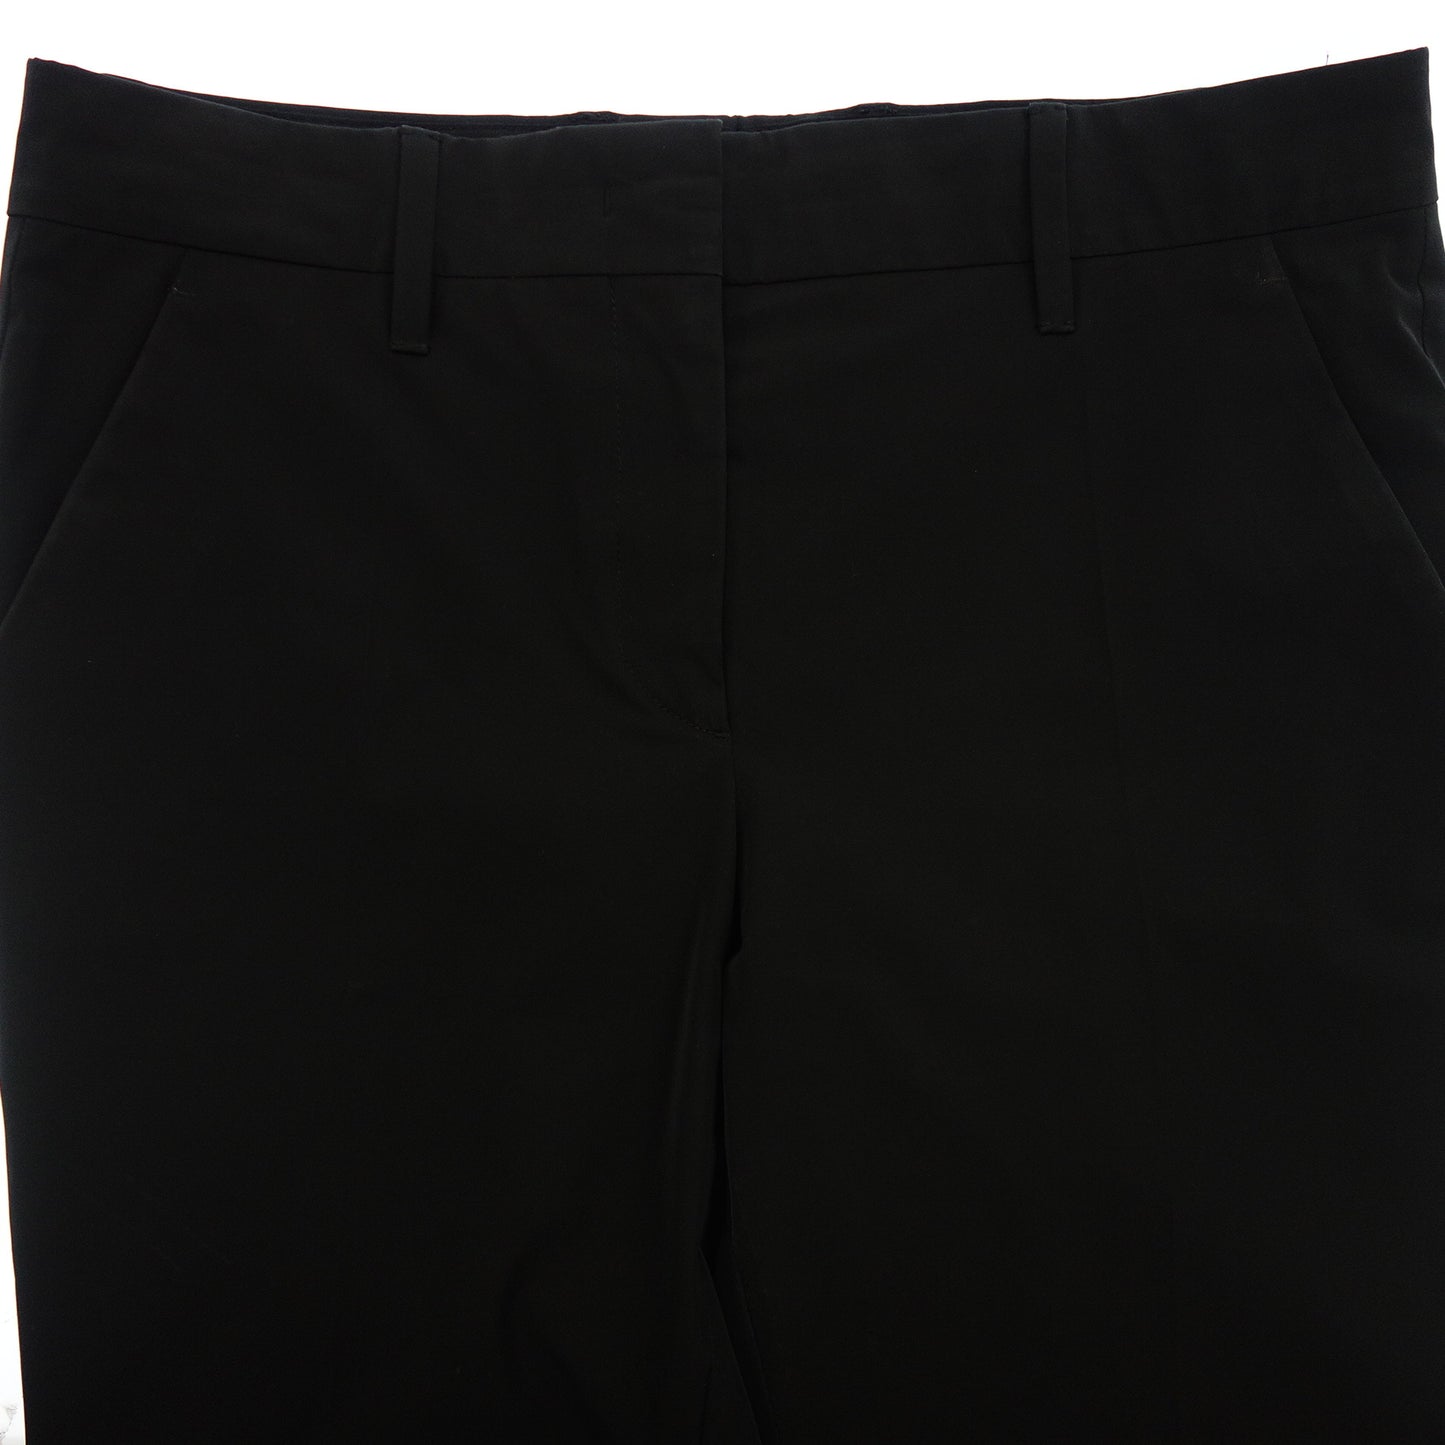 状况良好◆普拉达休闲裤 22SS 黑色尺寸 40 PRADA [AFB46] 